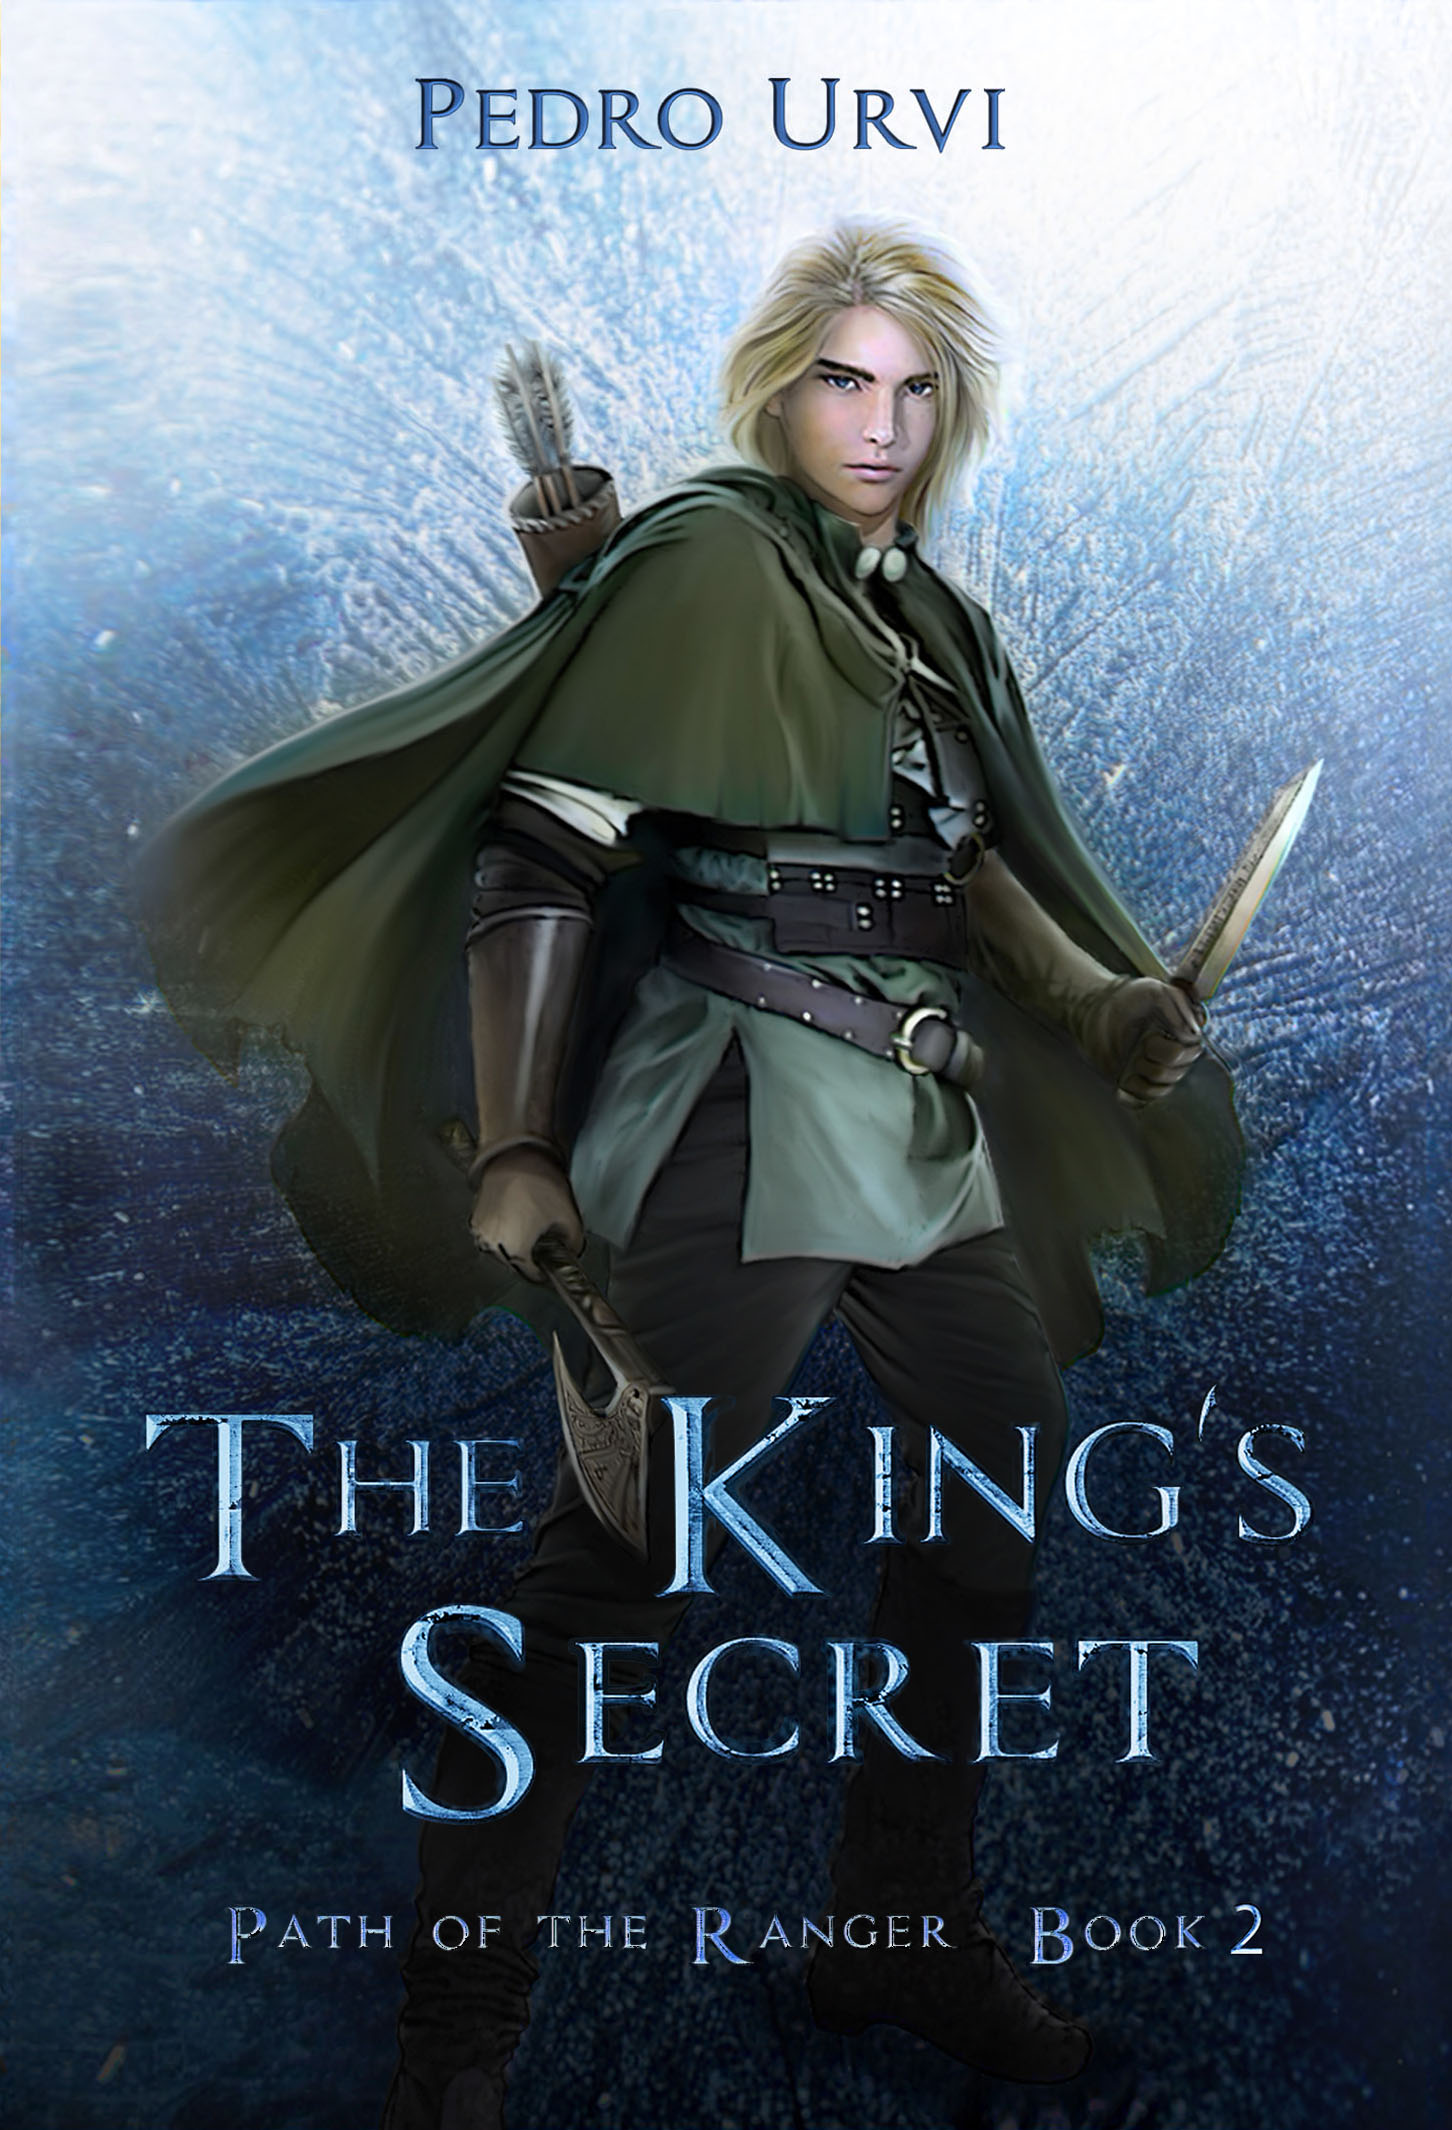 The King’s Secret